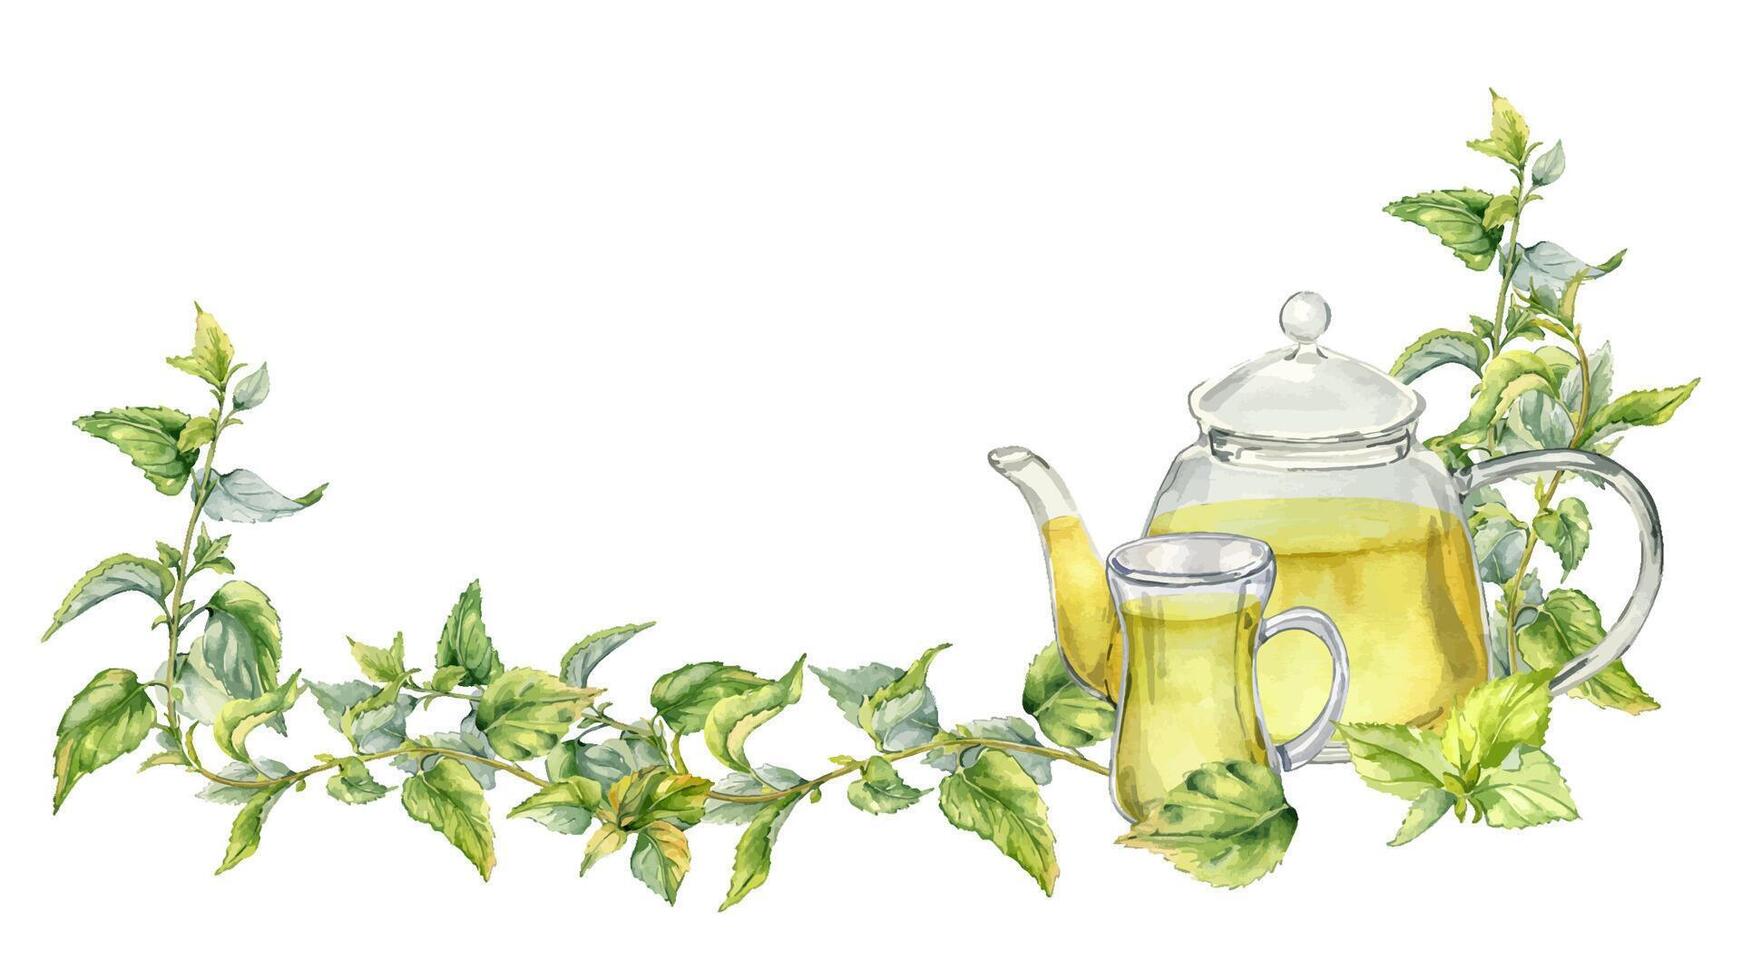 Banner mit Nessel Medizin Pflanze Aquarell Illustration isoliert auf Weiß. Glas Teekanne mit Tee von Kräuter- Pflanzen Hand gezeichnet. Design Element zum Etikett, Paket, Nessel Produkt, Apotheker vektor